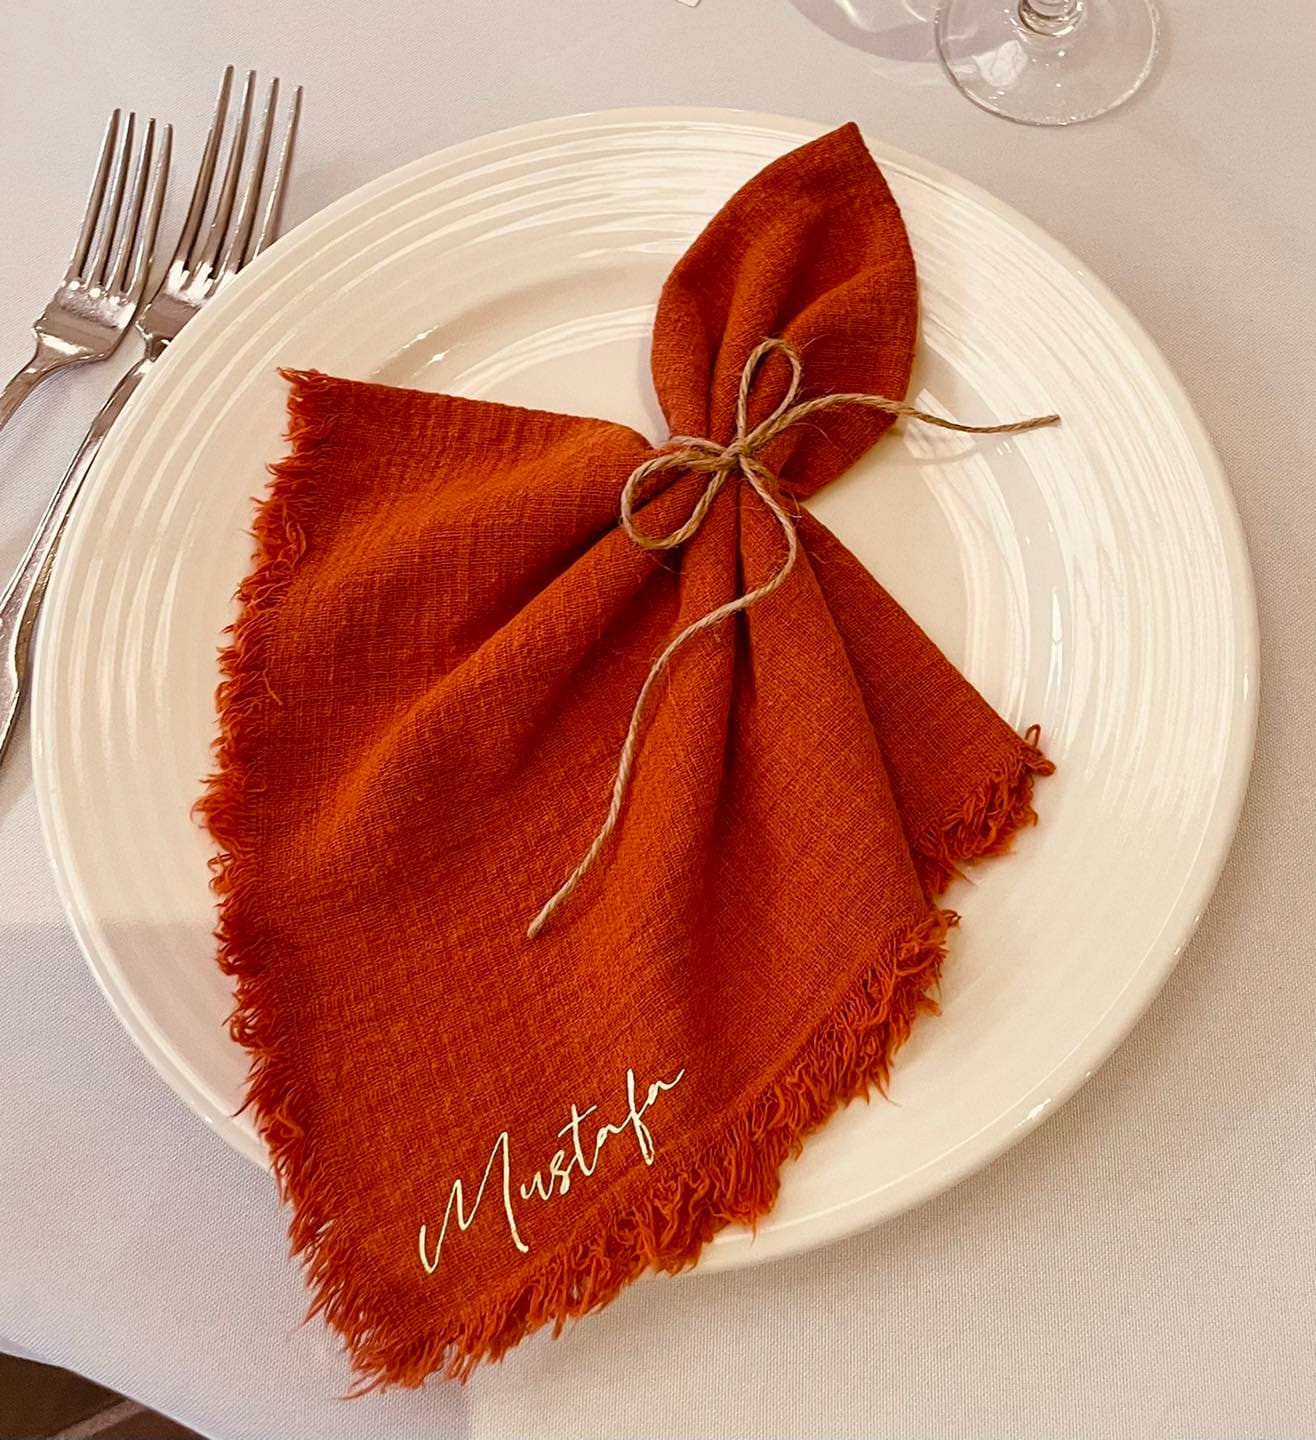 Linge de table : coudre et customiser des serviettes en tissu